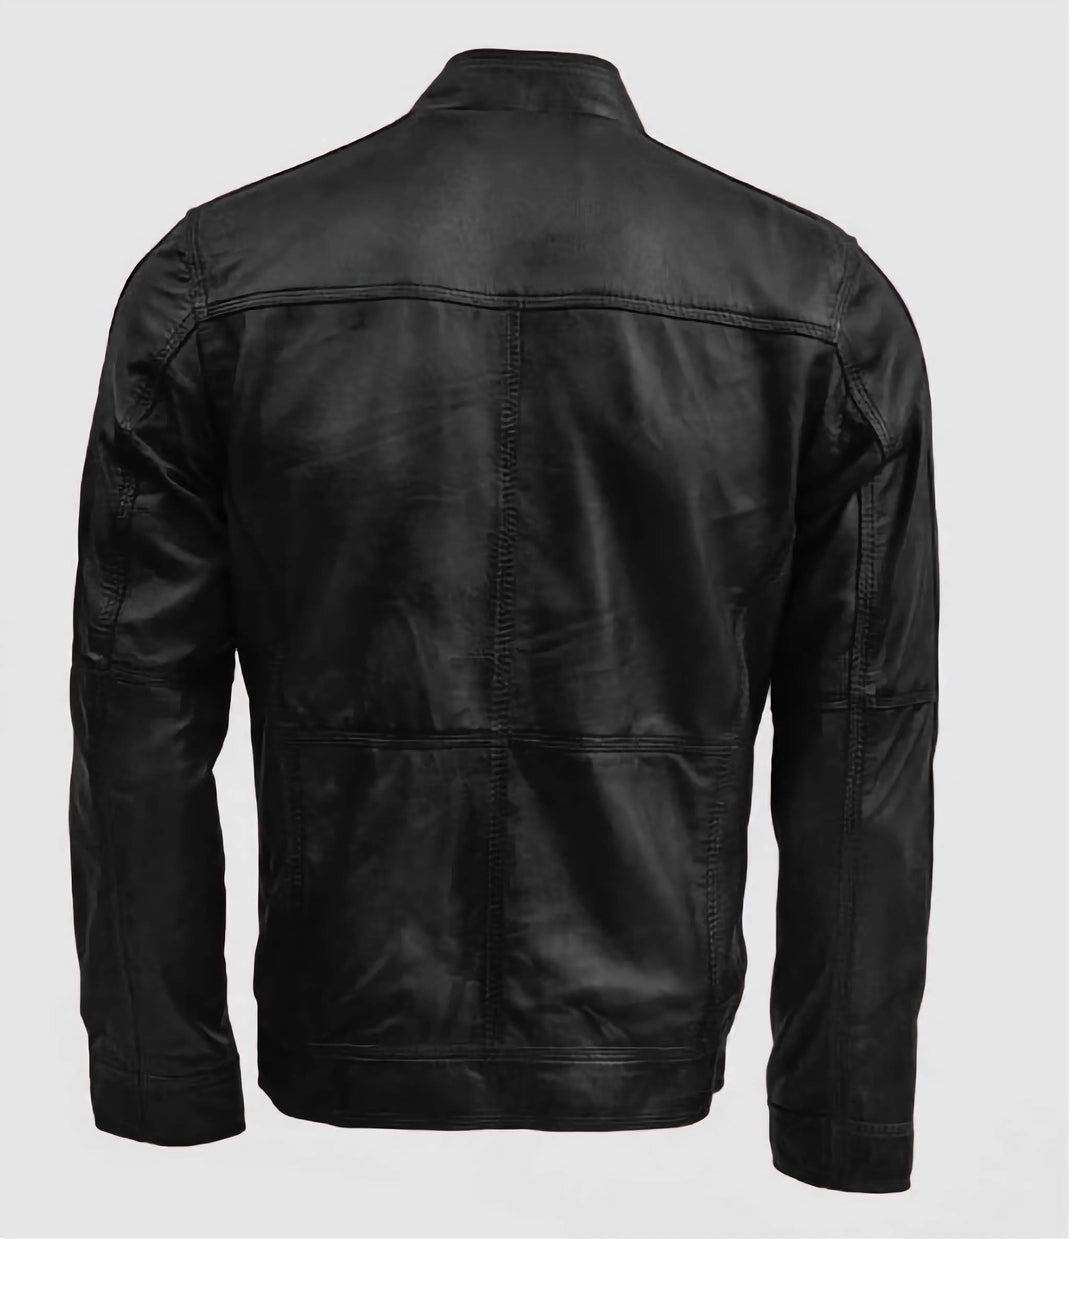 Tough Guy Black Leather Bomber Jacket